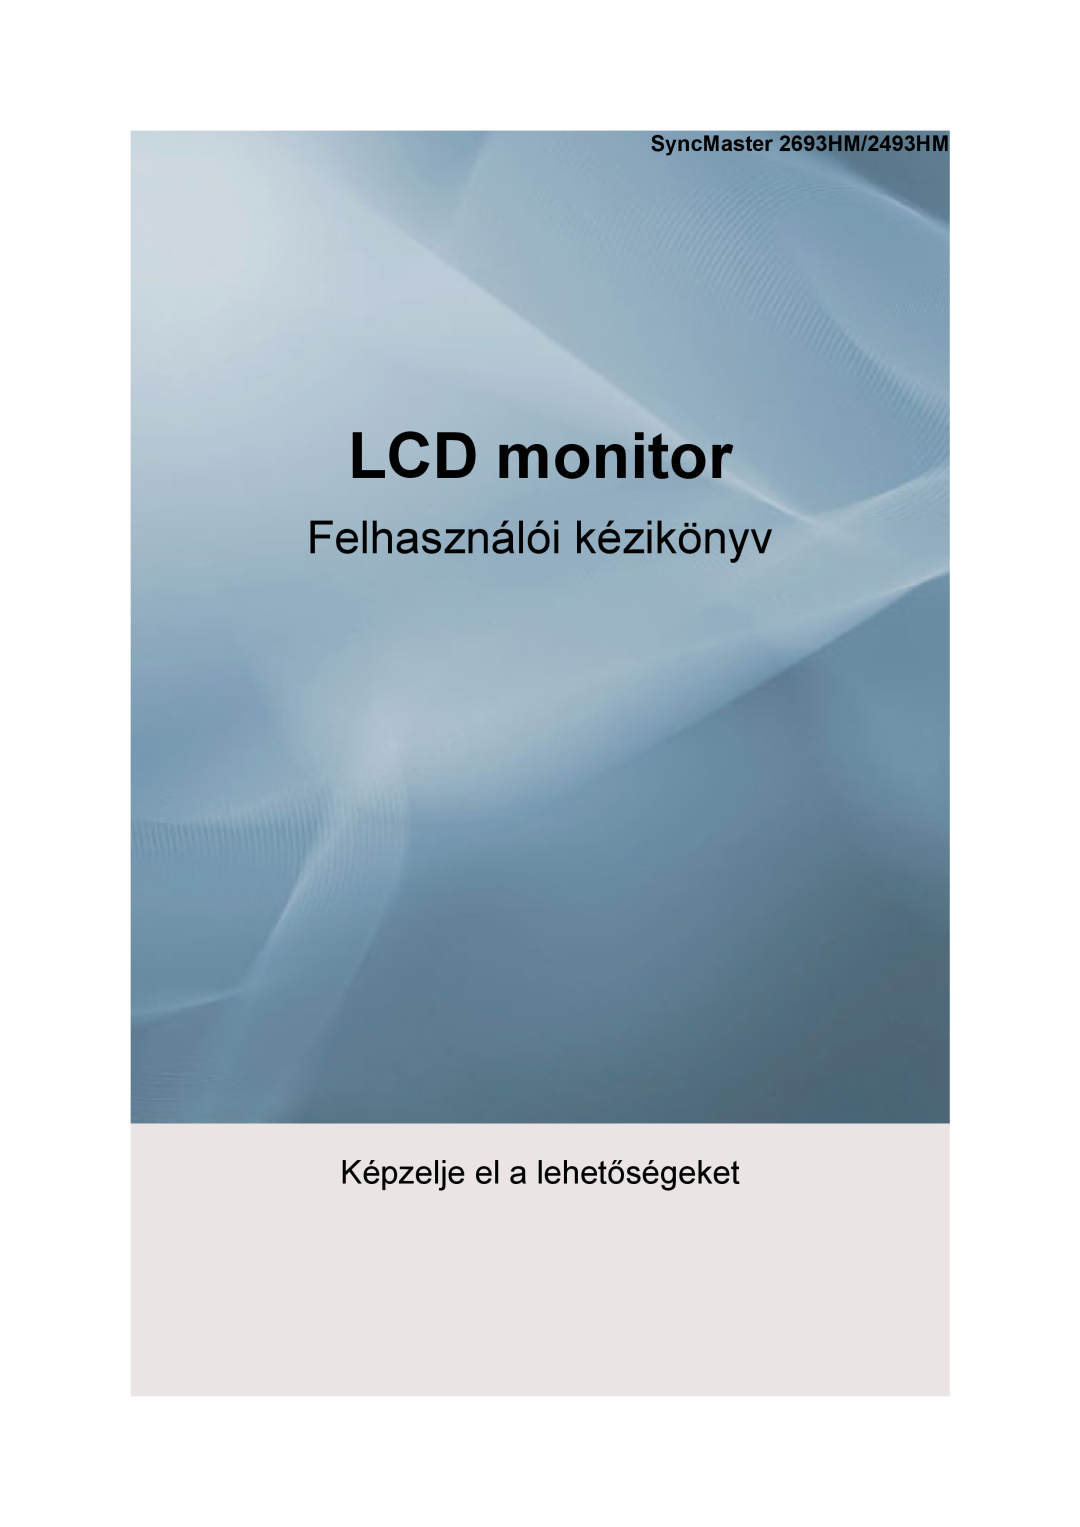 Samsung LS24KIEEFV/EDC, LS26KIERBV/EDC, LS24KIERBQ/EDC, LS32BHLNS/EDC manual Lcd Monitor, quick start guide, 2493HM, 2693HM 